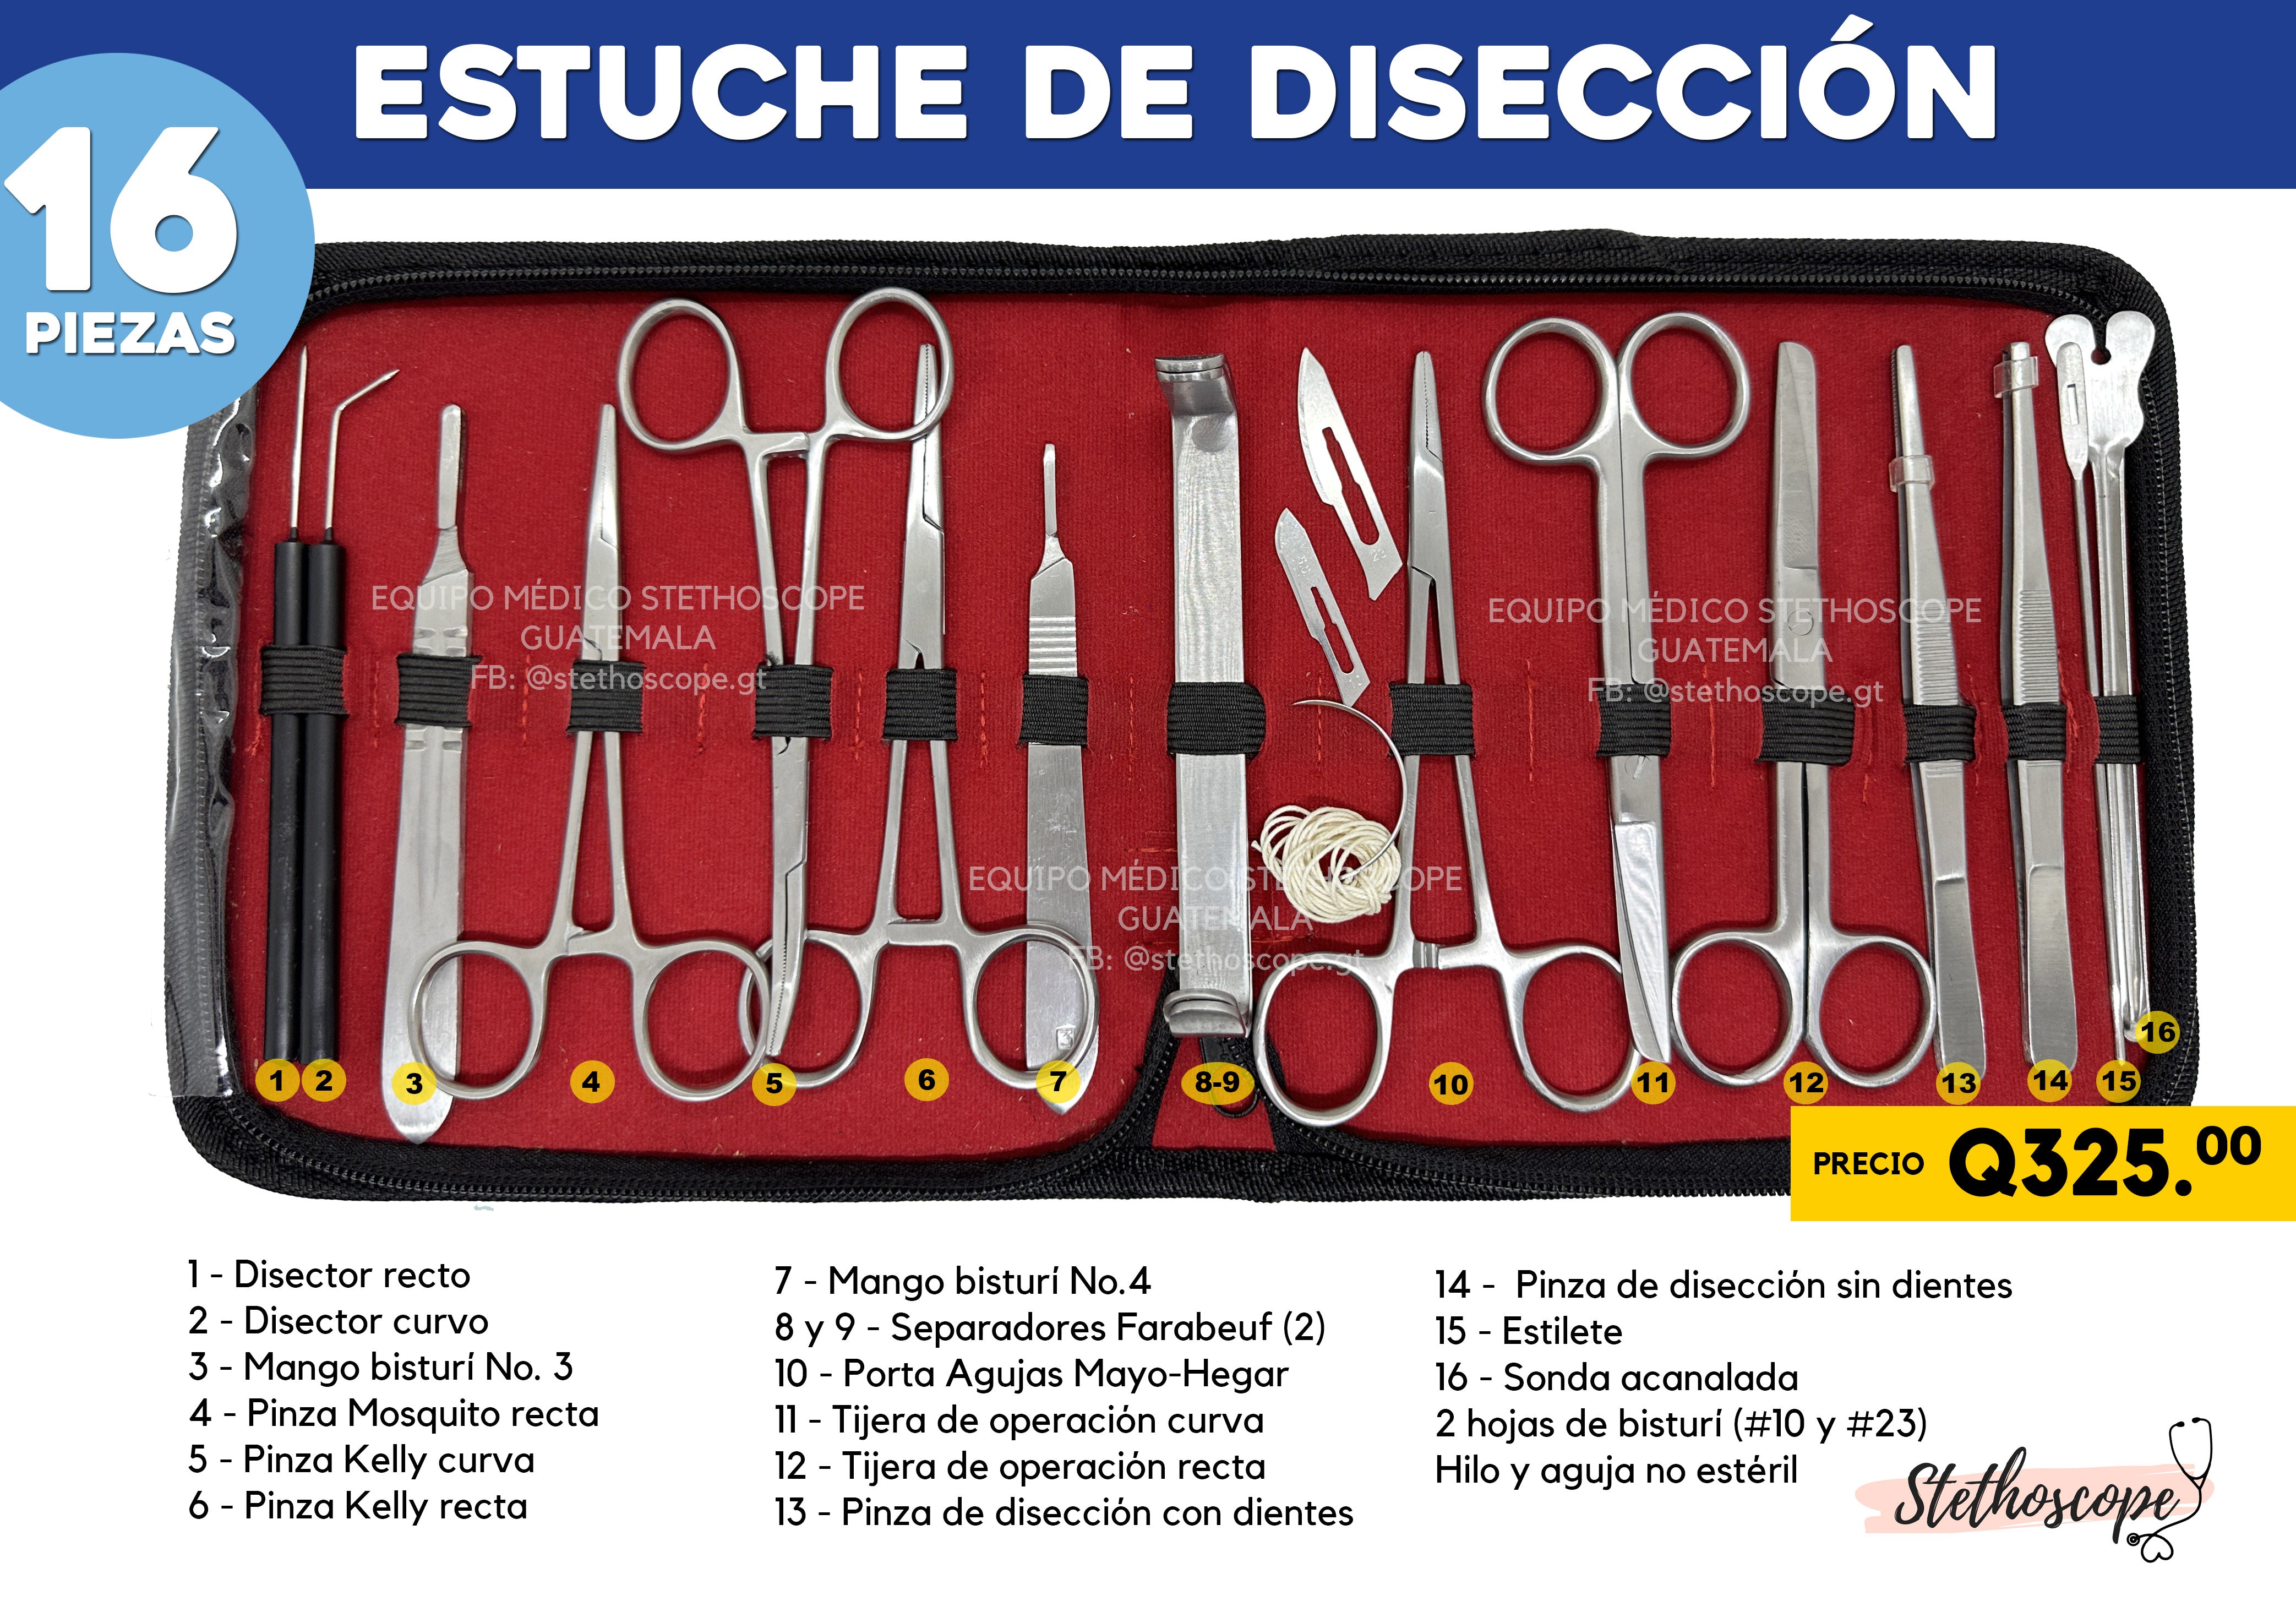 El kit de herramientas de sutura incluye: tijeras, pinzas Adson,  destornillador de aguja, pinzas para mosquitos, mango de bisturí; kit  completo de